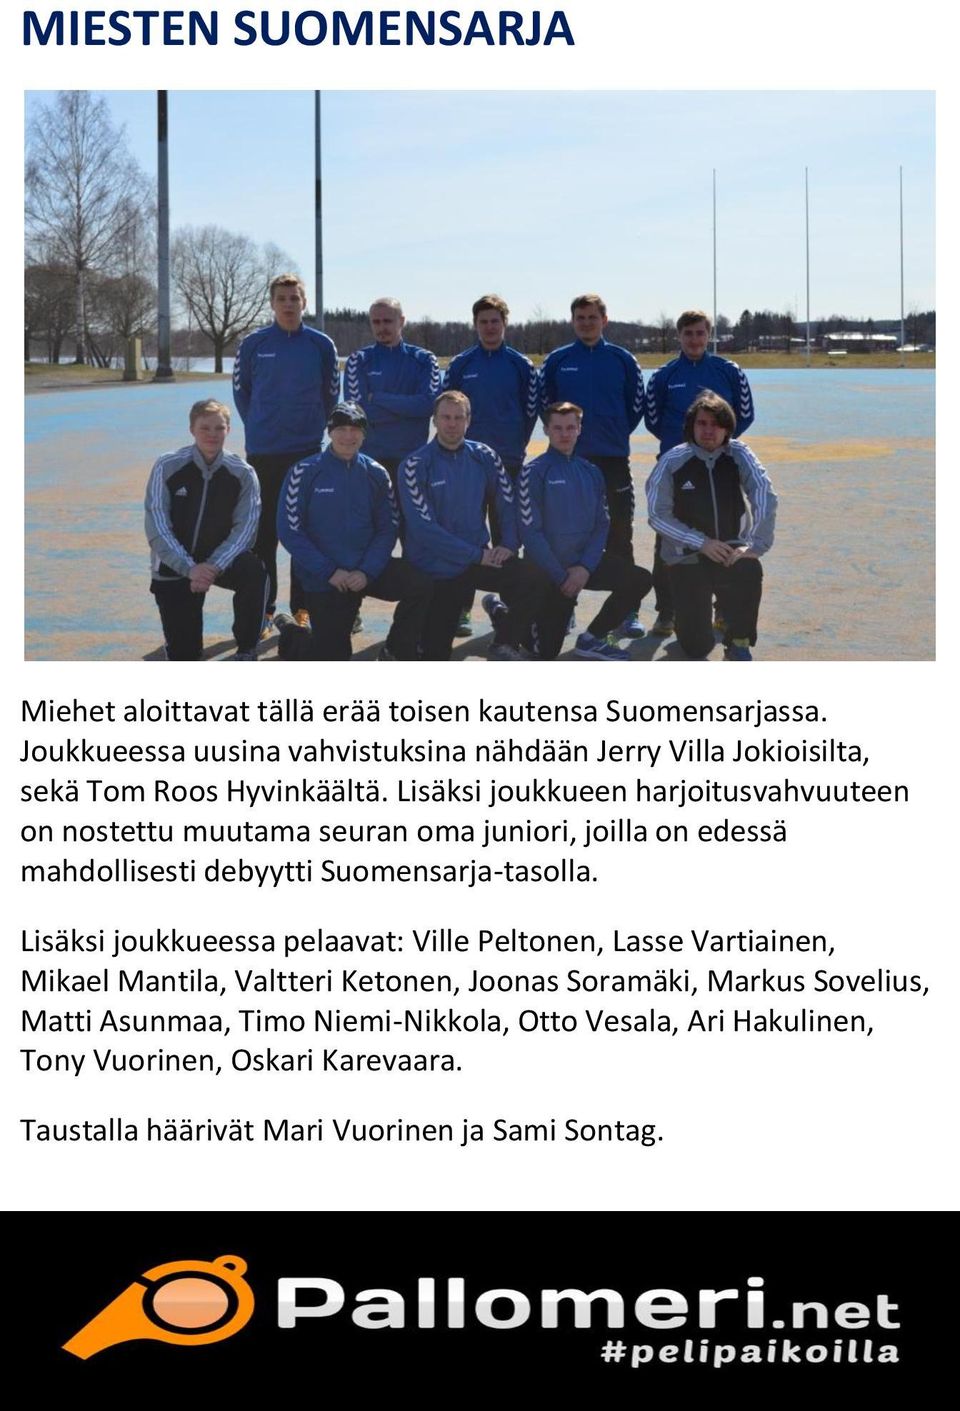 Lisäksi joukkueen harjoitusvahvuuteen on nostettu muutama seuran oma juniori, joilla on edessä mahdollisesti debyytti Suomensarja-tasolla.